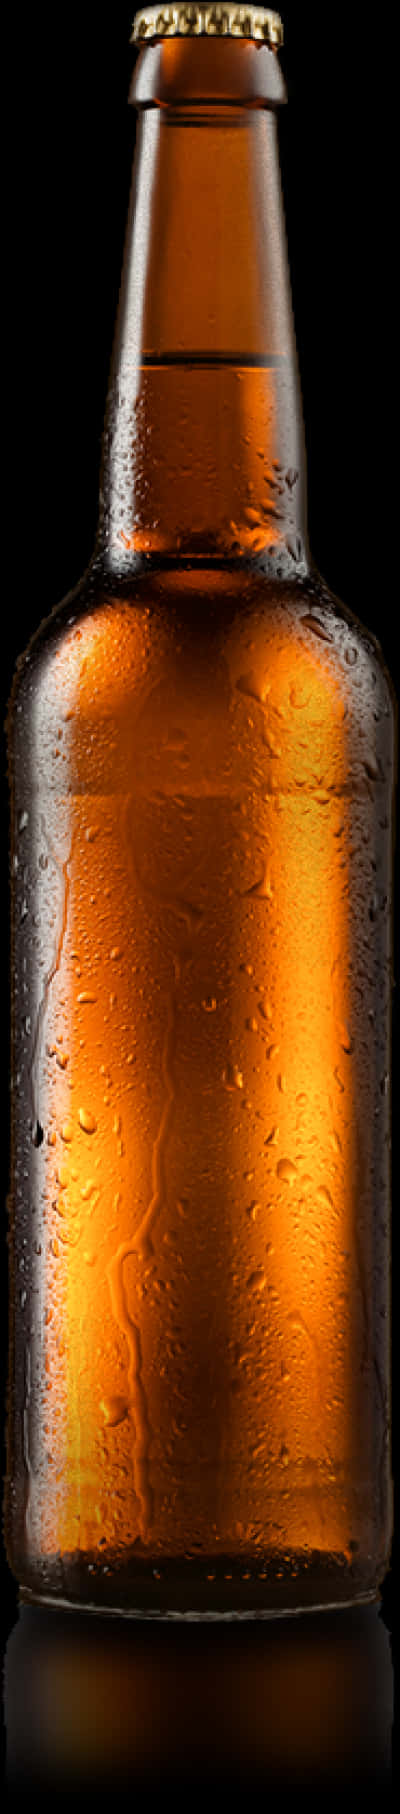 Chilled Beer Bottle Against Black Background PNG image